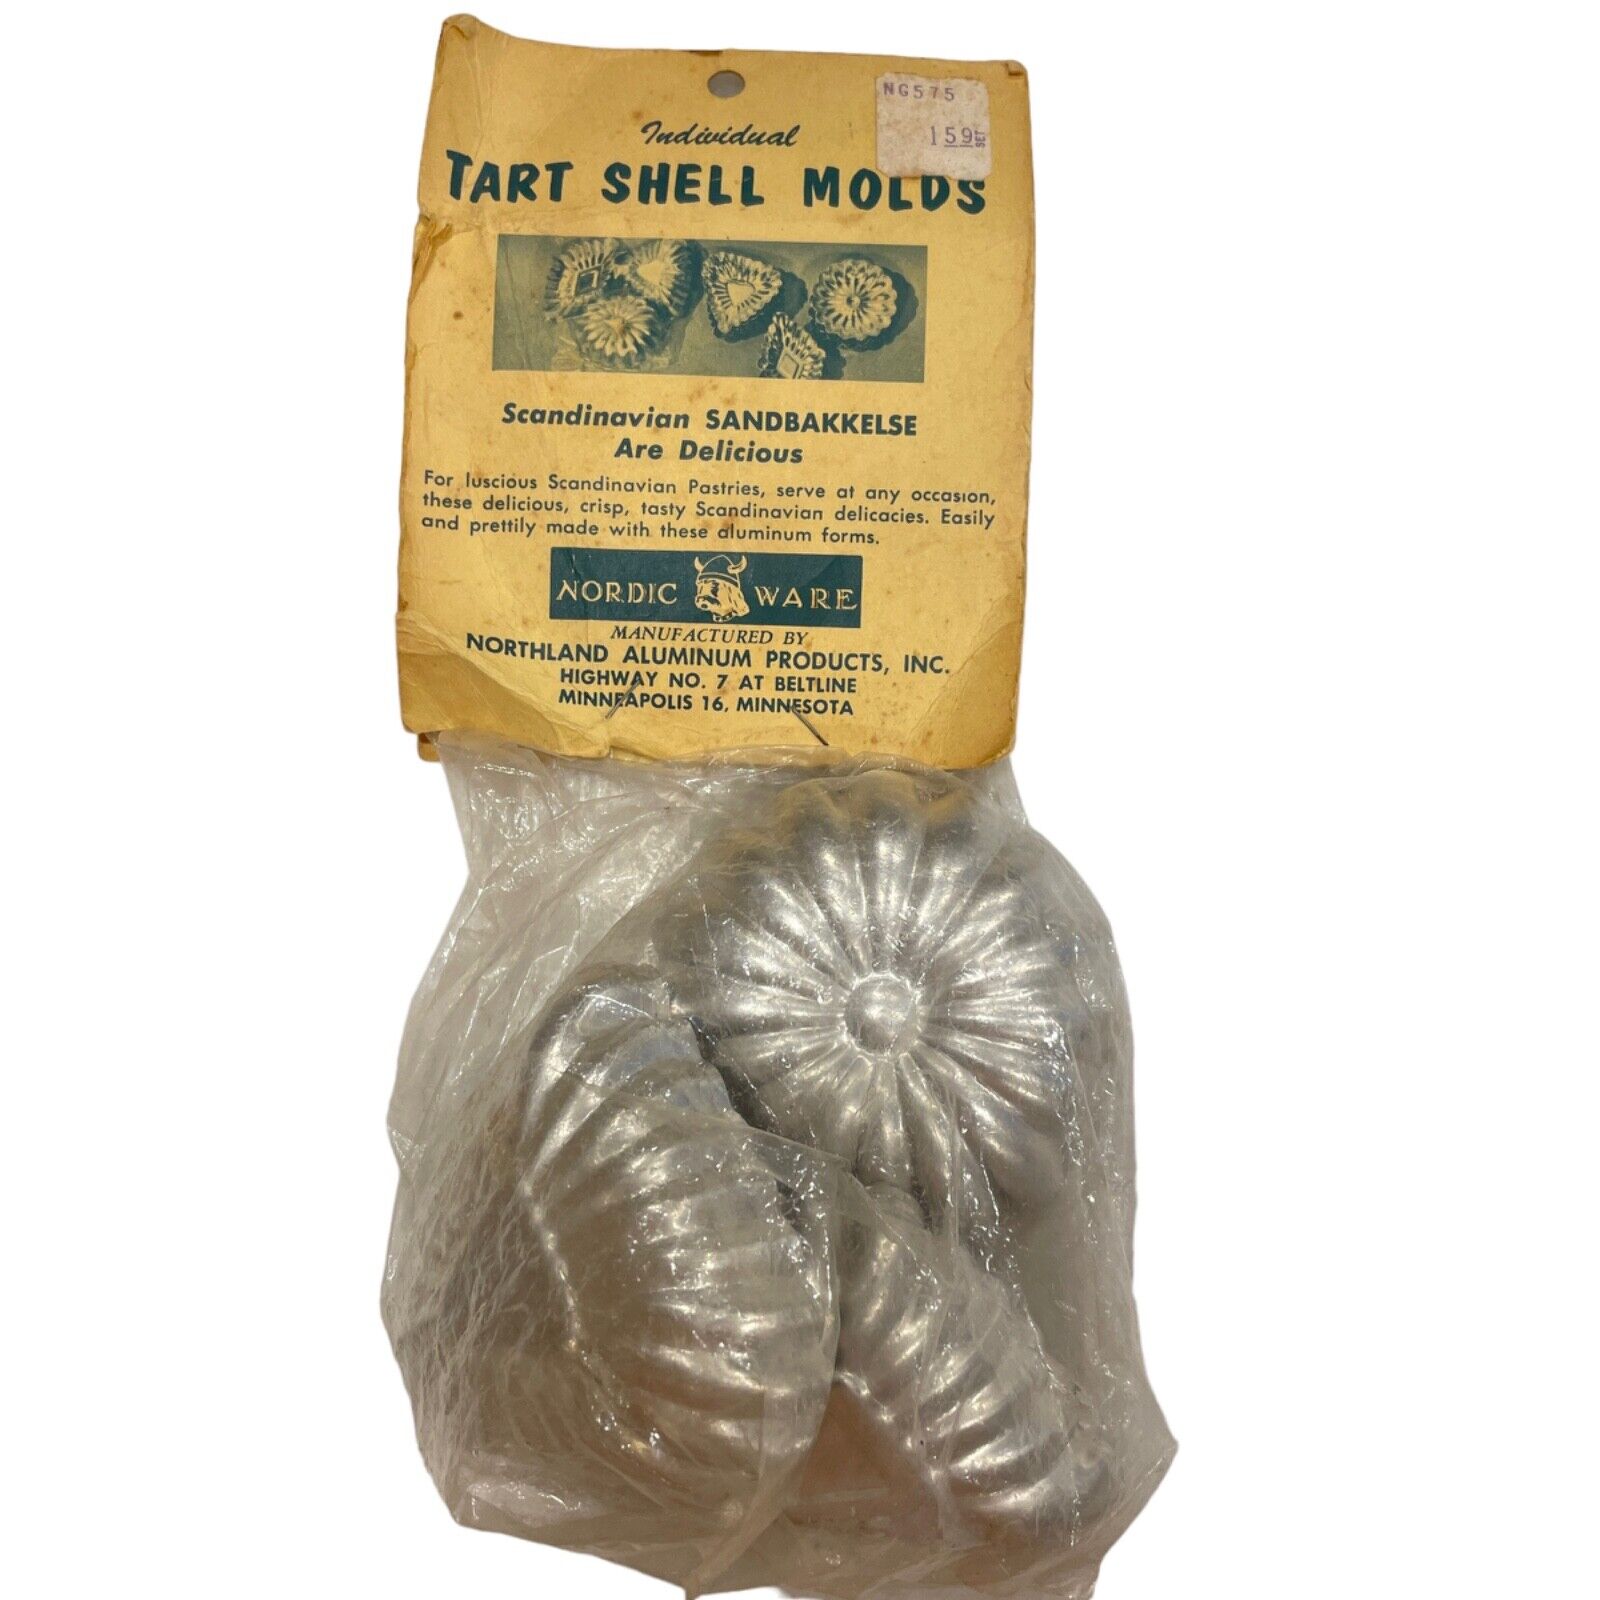 Vintage Tart Shell Molds Nordic Ware Sandbakkelse Recipes 12 in Pack NOS New